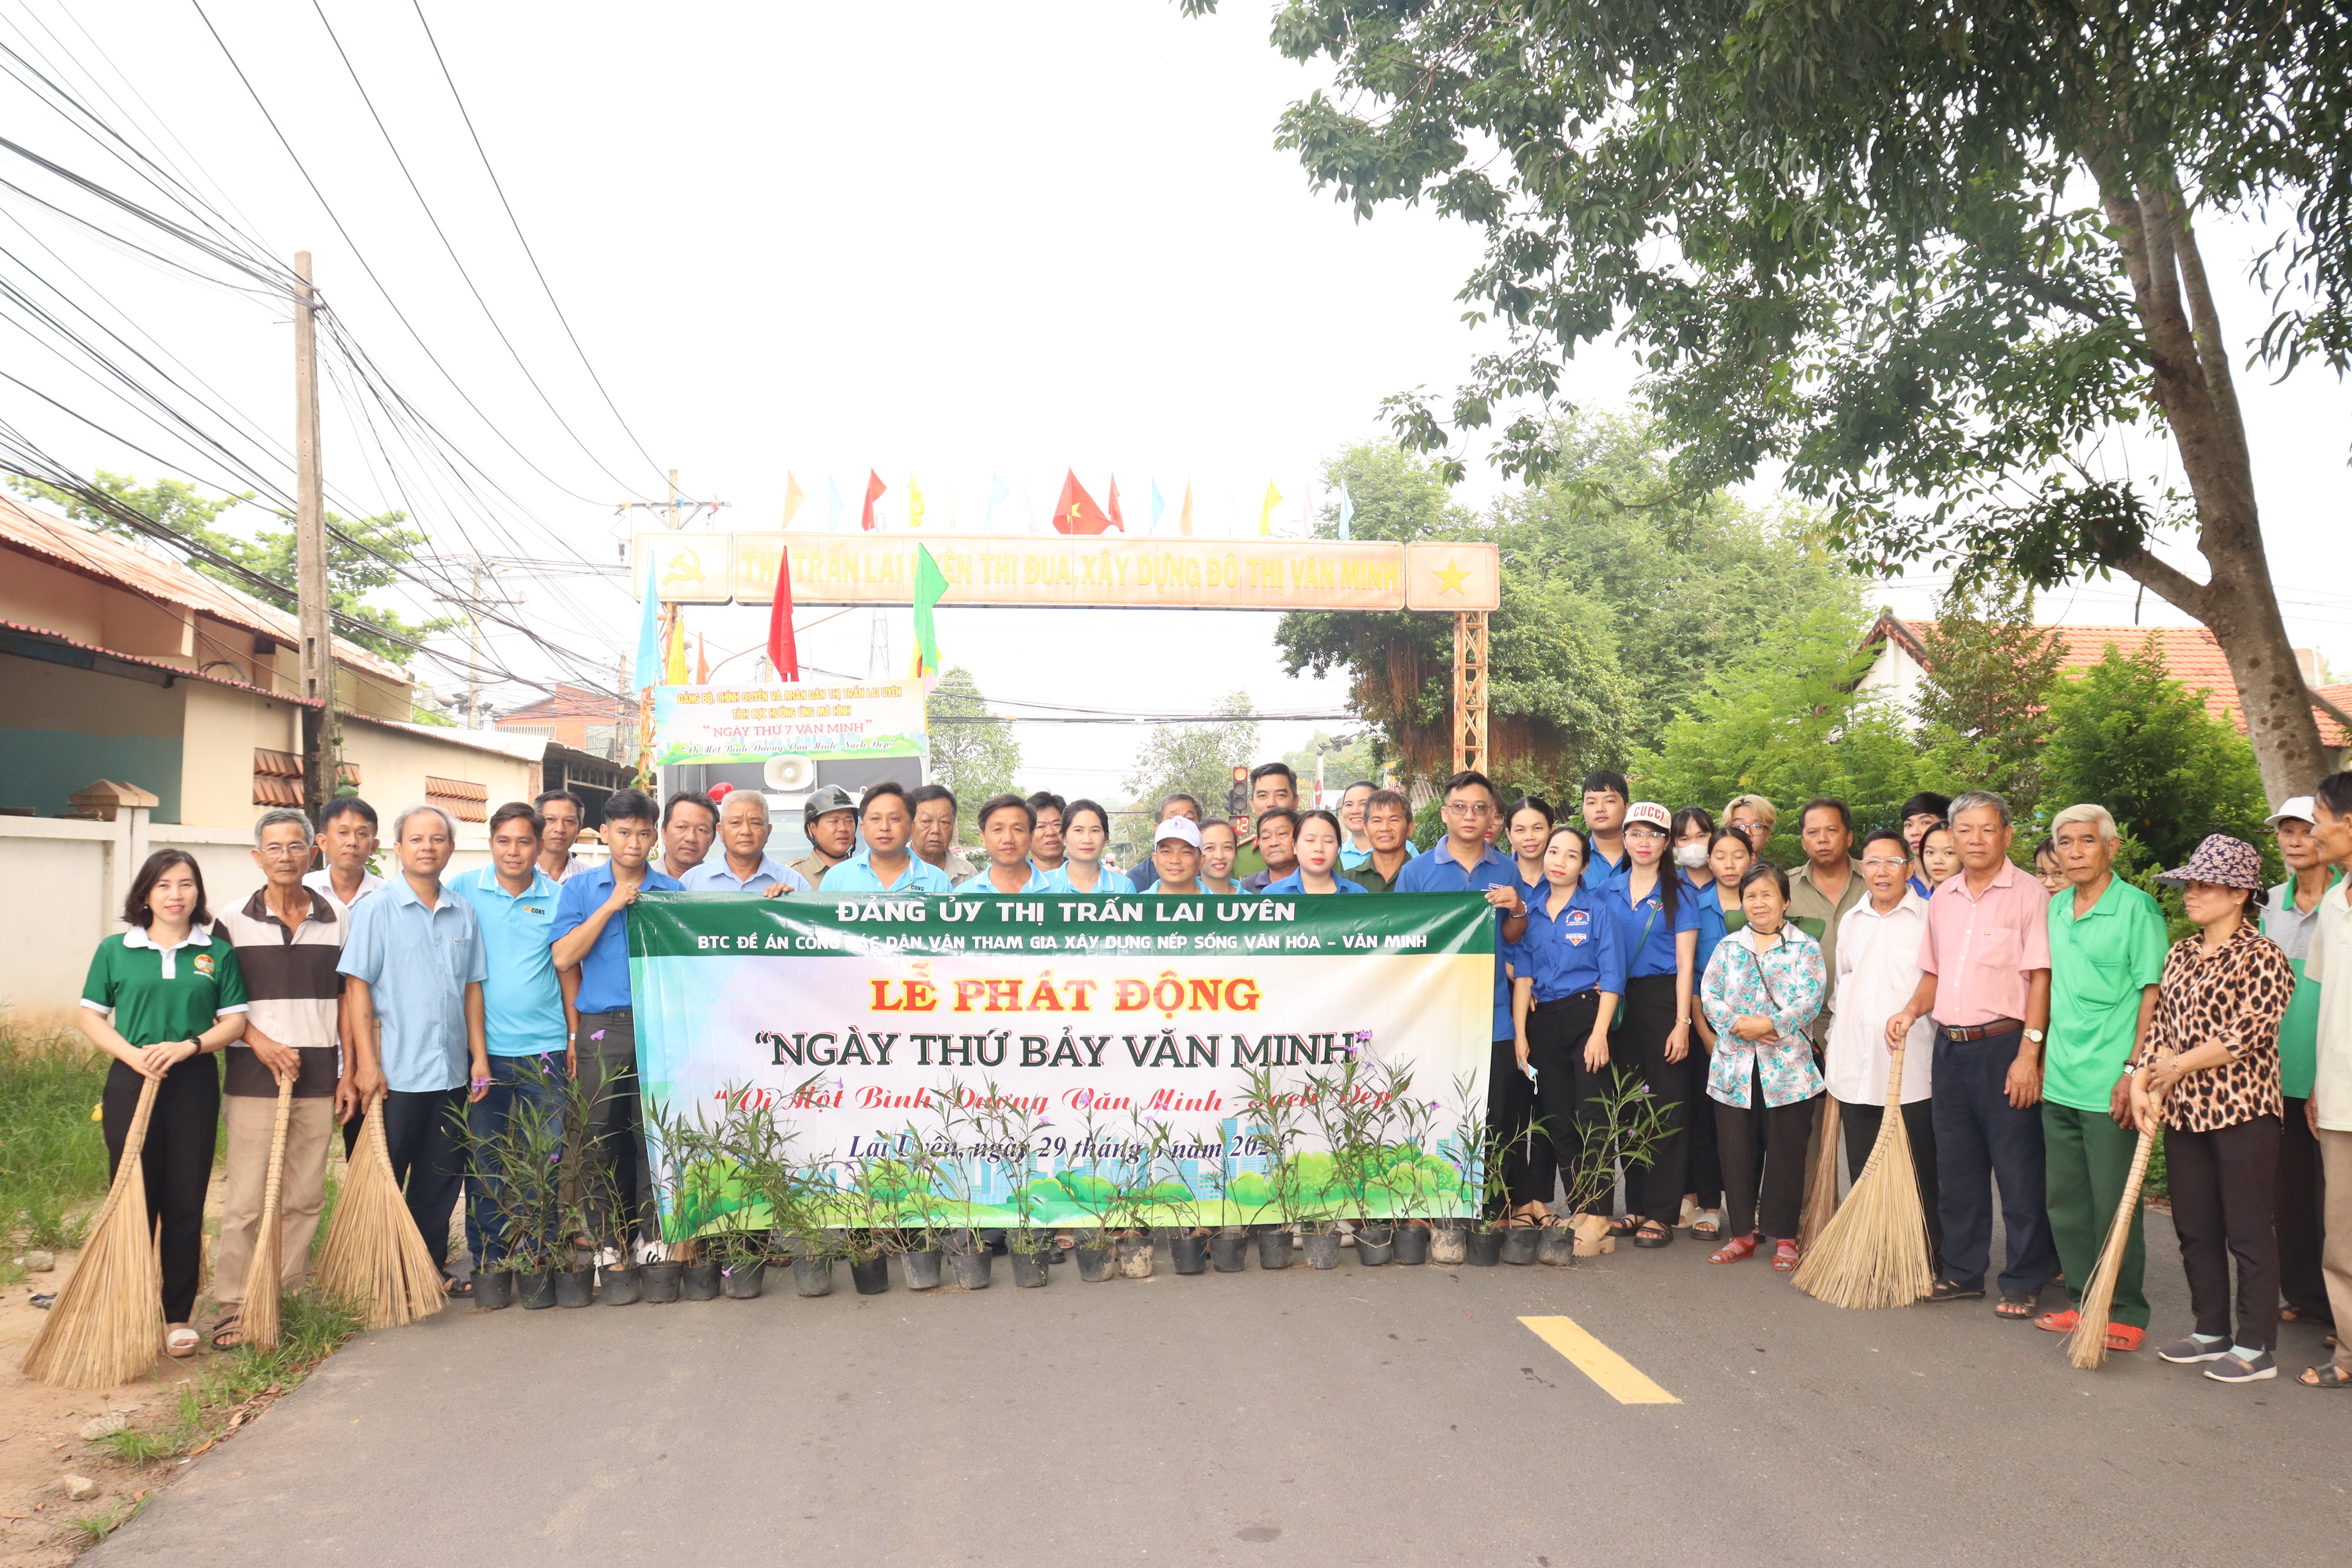 Ban tổ chức đề án 02 thị trấn Lai Uyên tổ chức lễ phát động “Ngày thứ bảy Văn Minh “Vì một Bình Dương văn minh - Sạch đẹp”